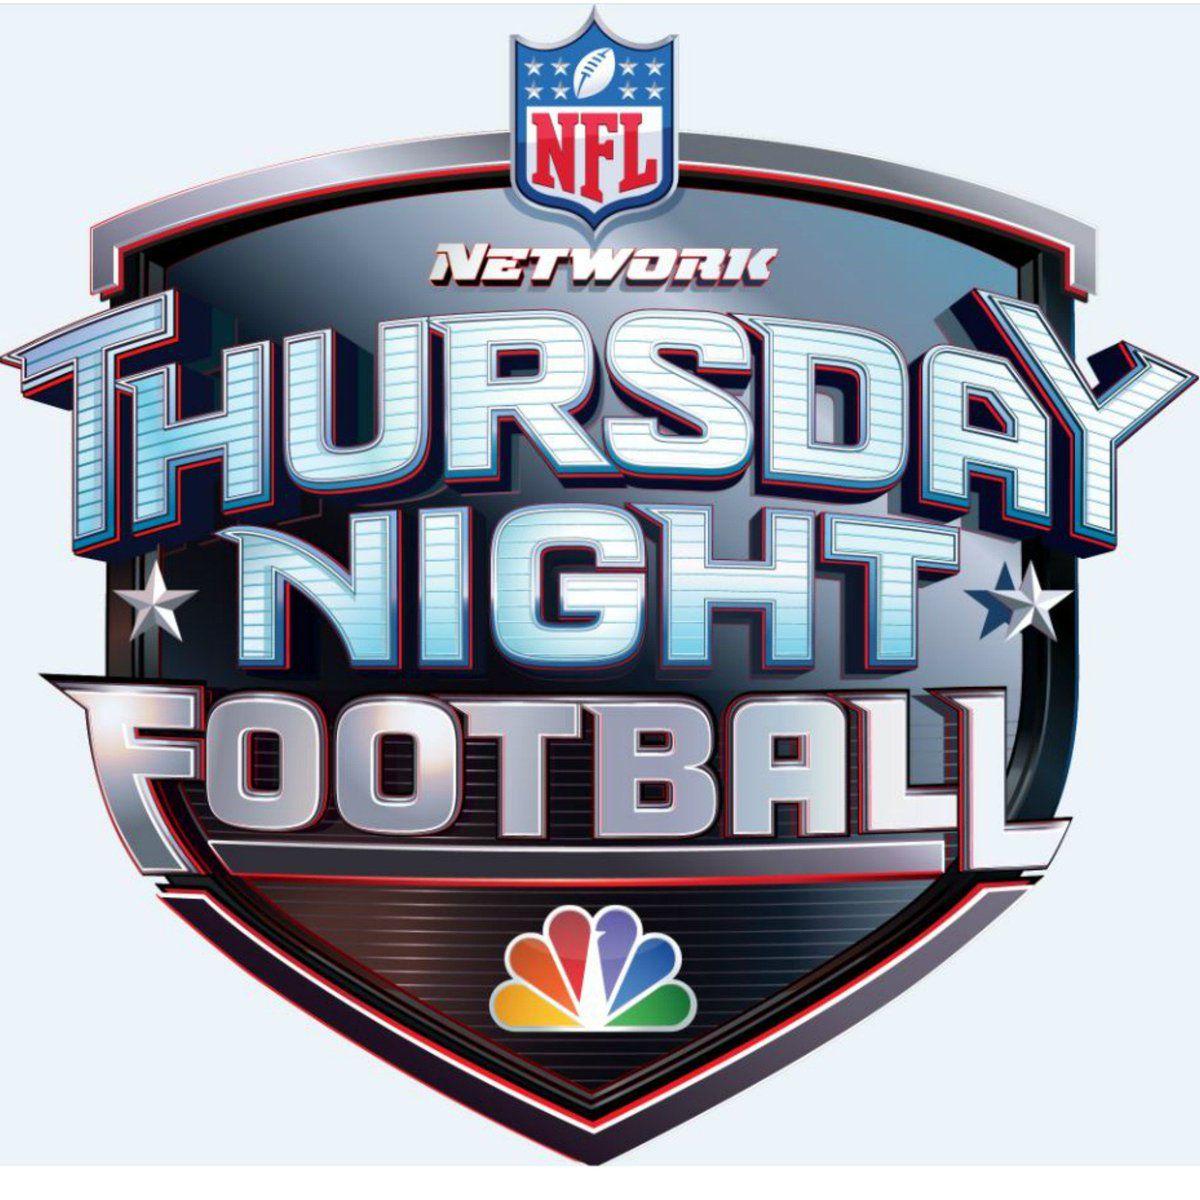 Thursday Logo - Thursday Night Football | Logopedia | FANDOM powered by Wikia